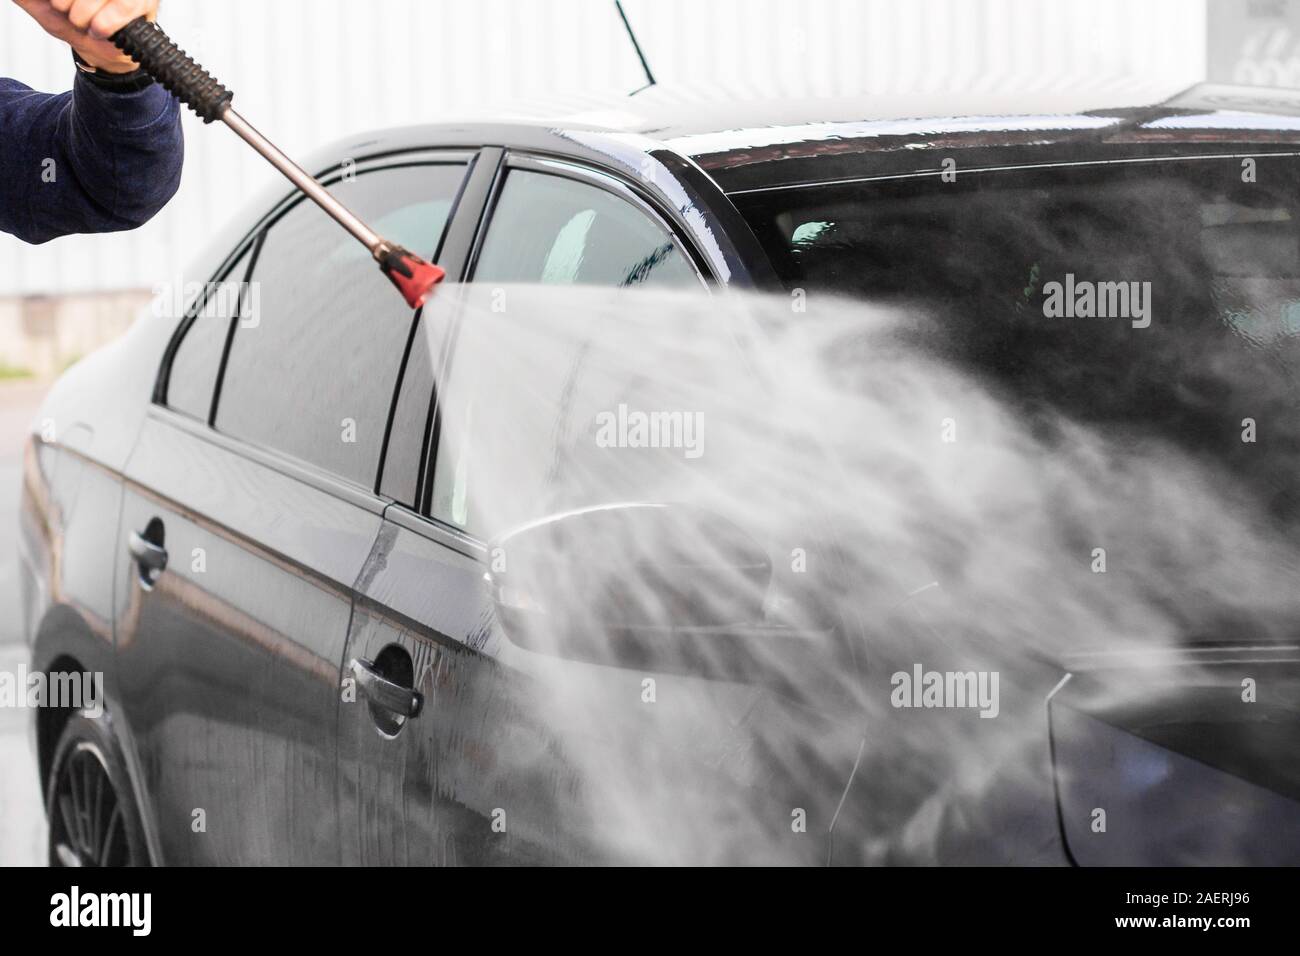 Brush up on modern washing - Professional Carwashing & Detailing